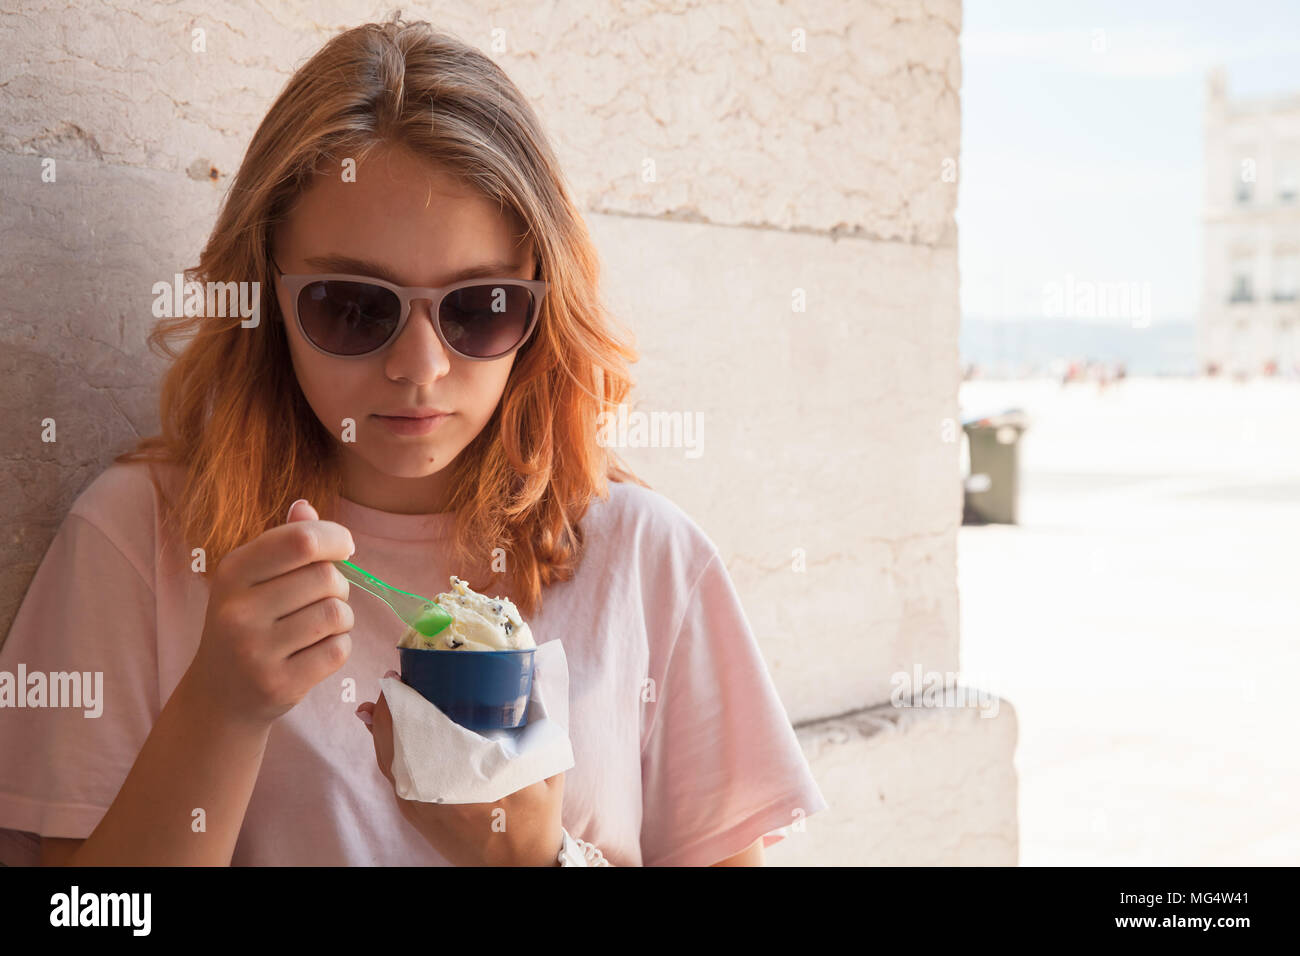 Europeo teenage girl in occhiali da sole mangia gelato, close up ritratto all'aperto Foto Stock